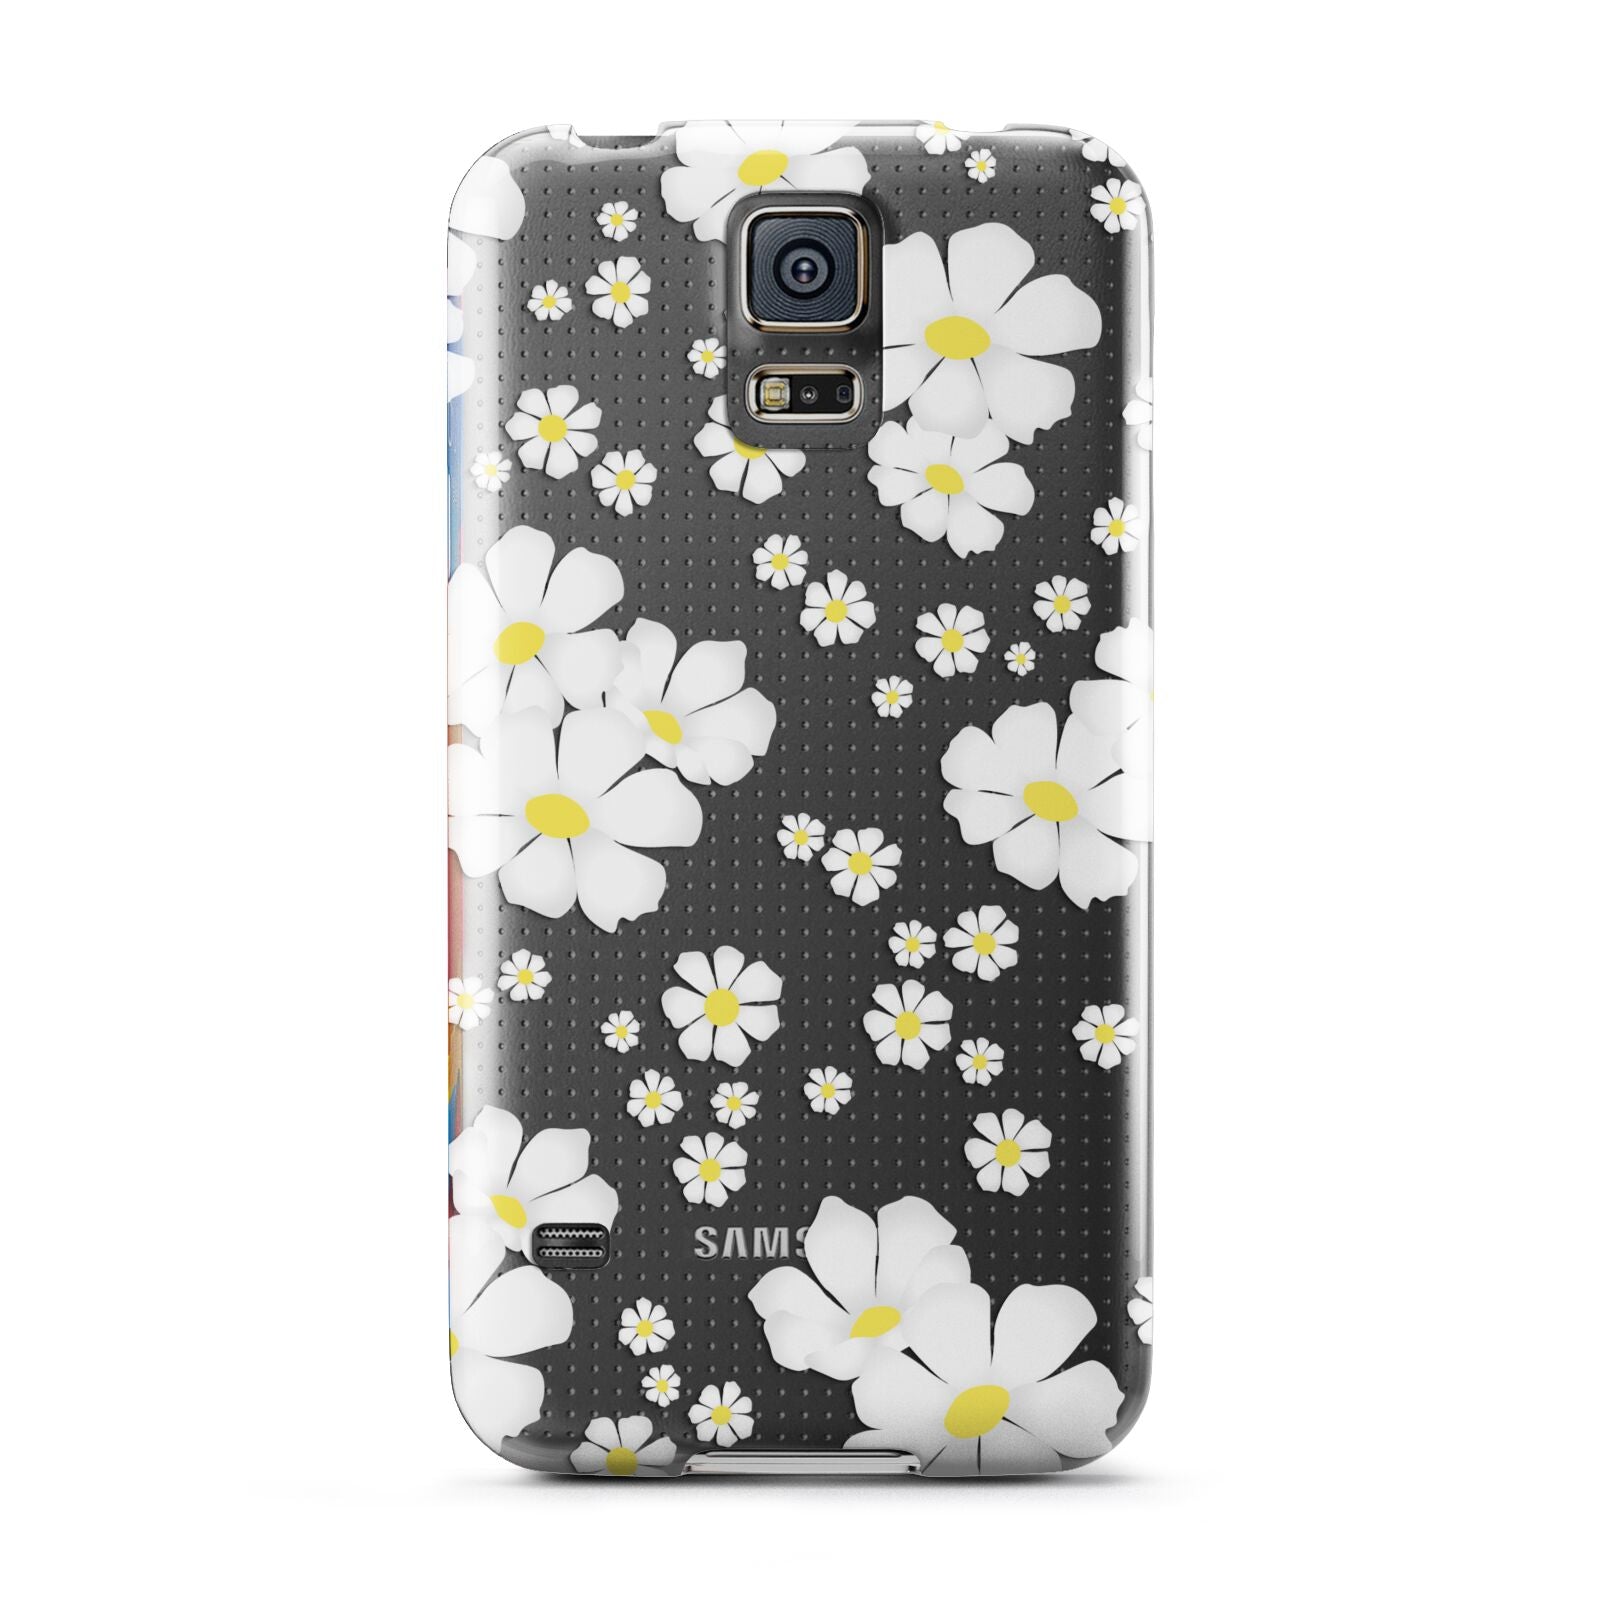 White Daisy Flower Samsung Galaxy S5 Case